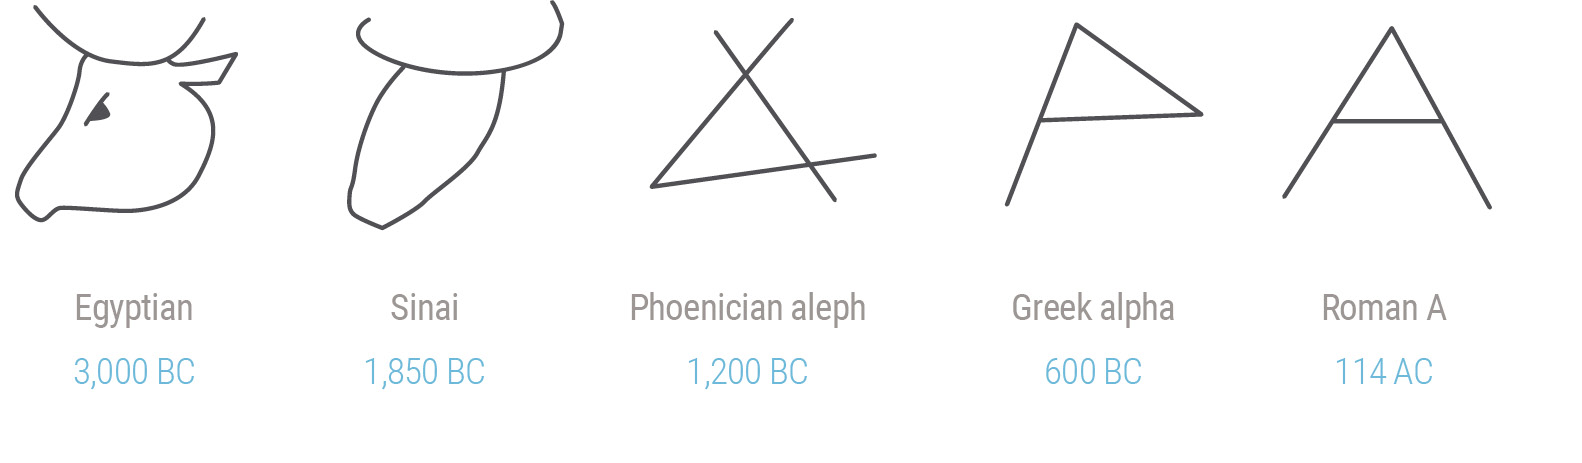 estilización del pictograma-fonograma Aleph